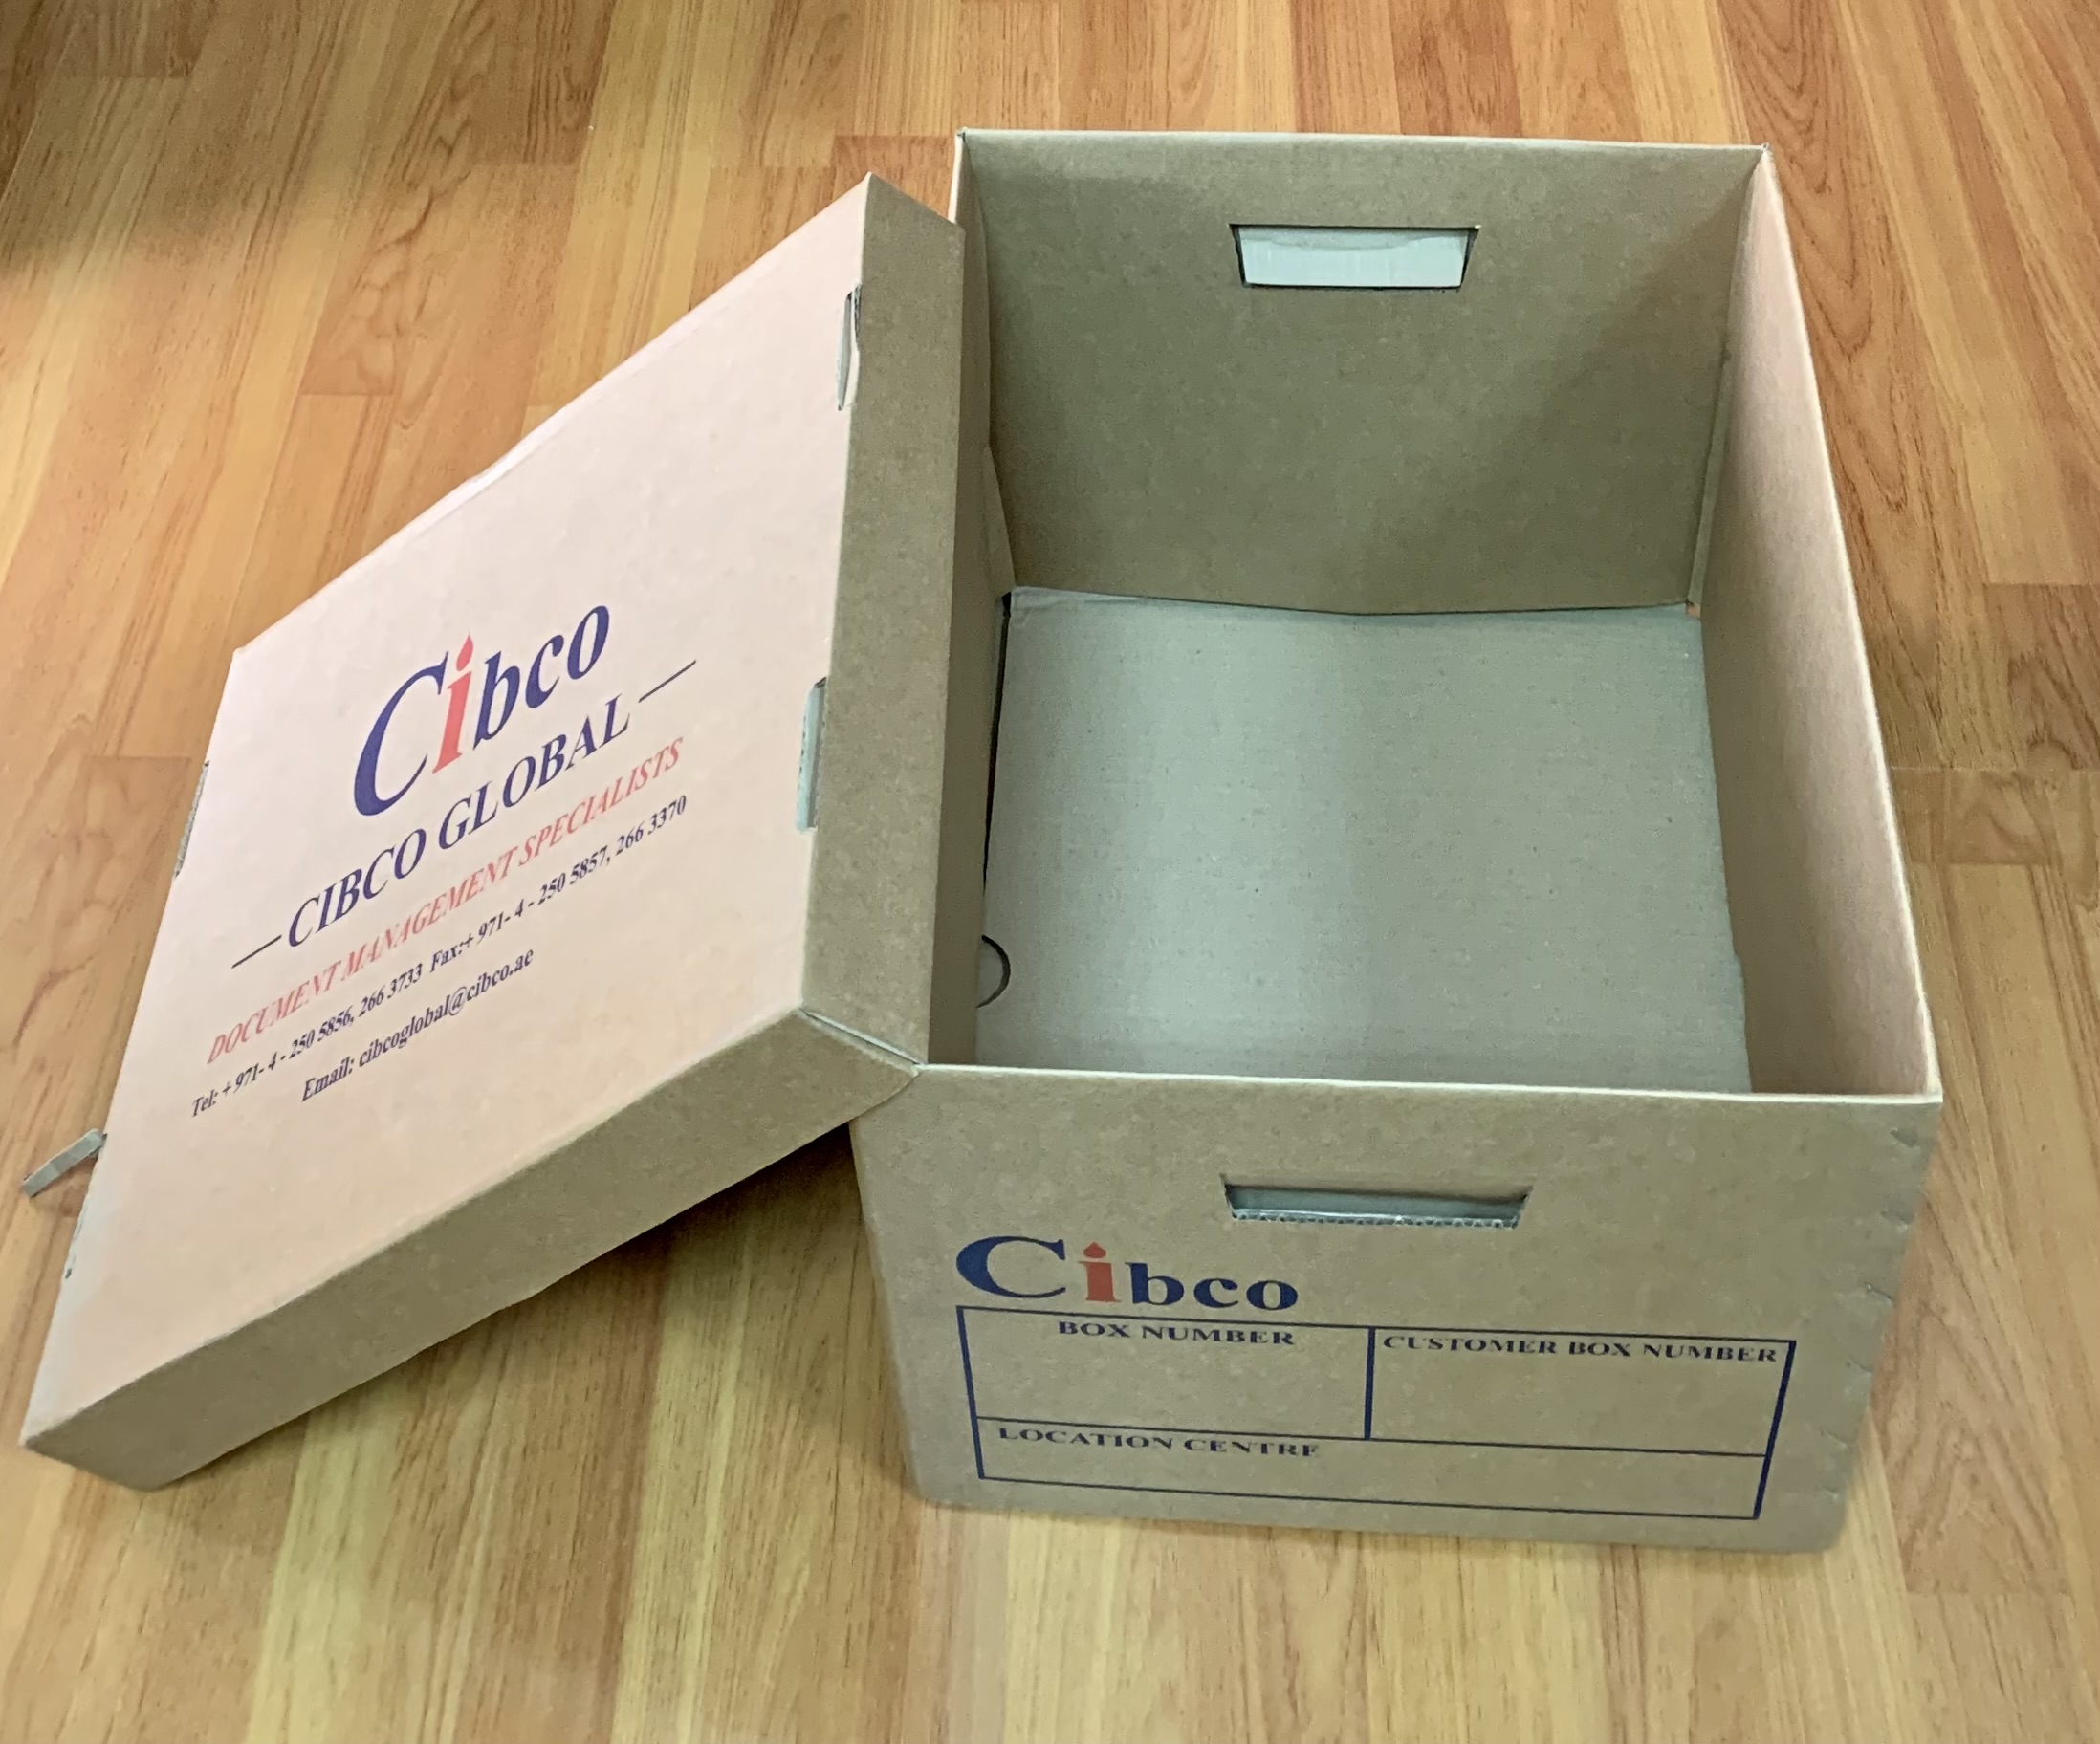 Cibco file storage box - a4